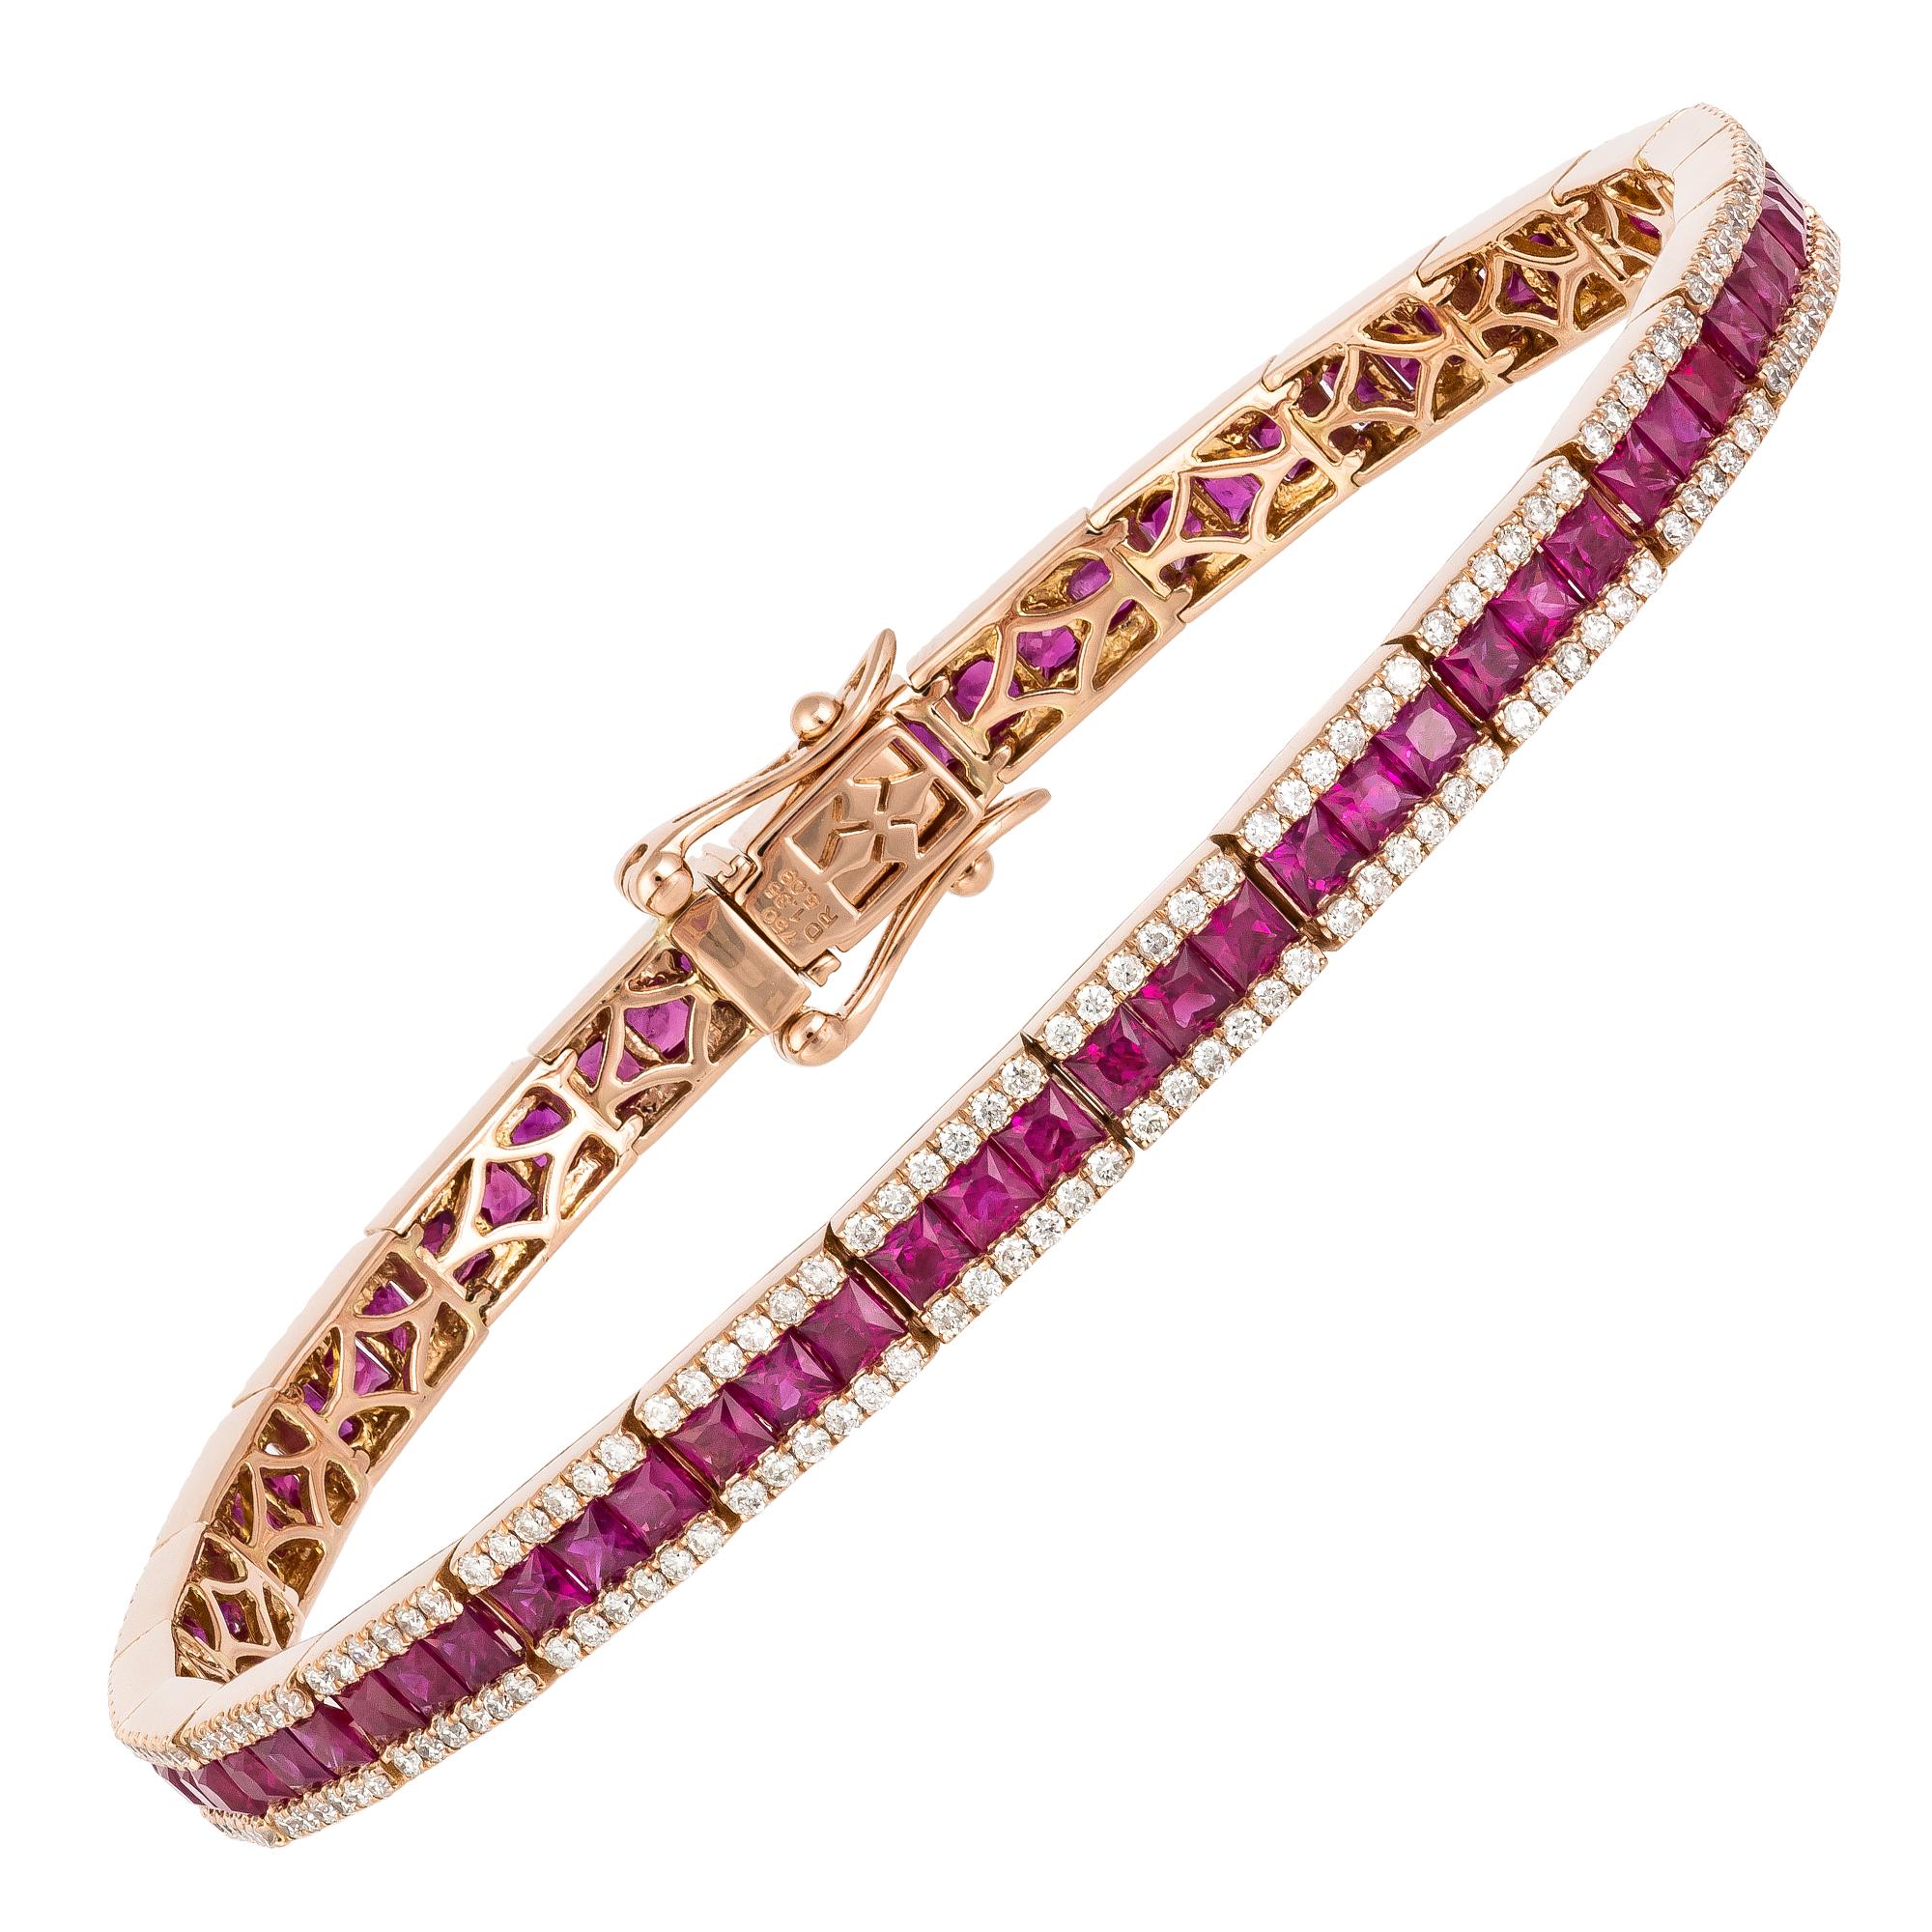 Taille ronde Bracelet tennis en or rose 18 carats avec diamants 1,35 carat/300 pièces, rubis 5,09 carats en vente